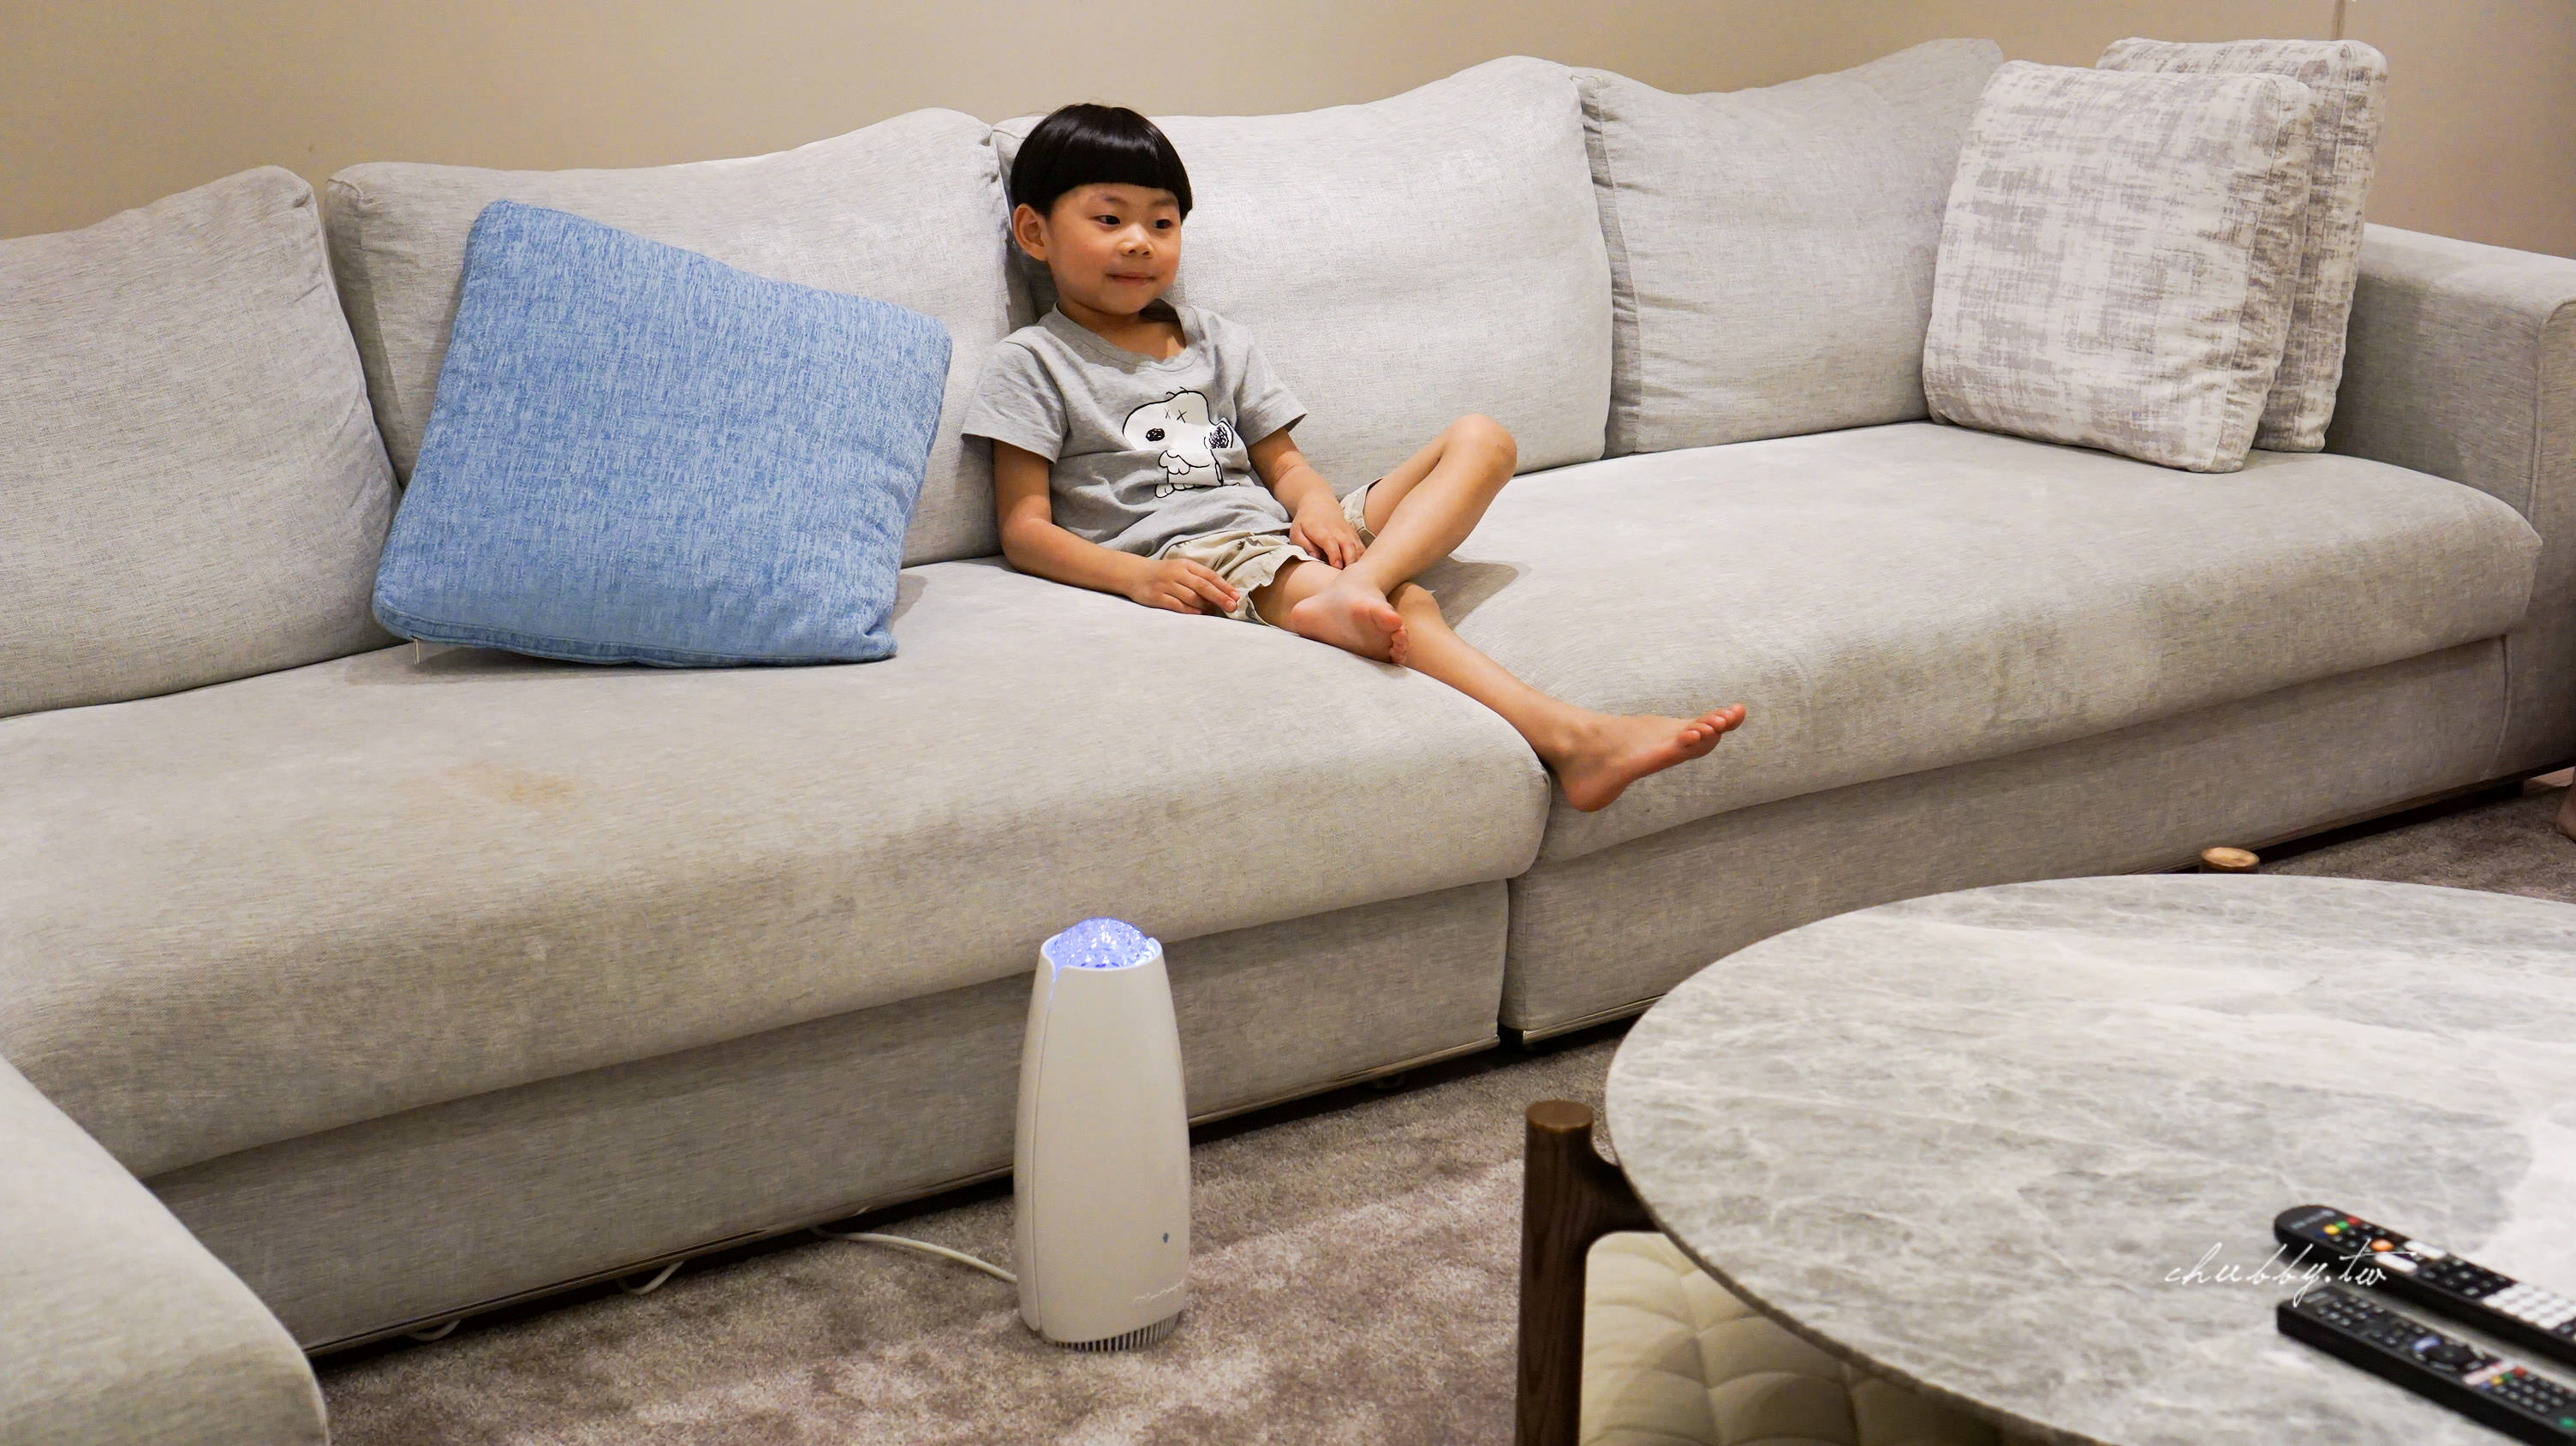 airfree空氣殺菌機實測一個月心得：兒童房必備的空氣殺菌機